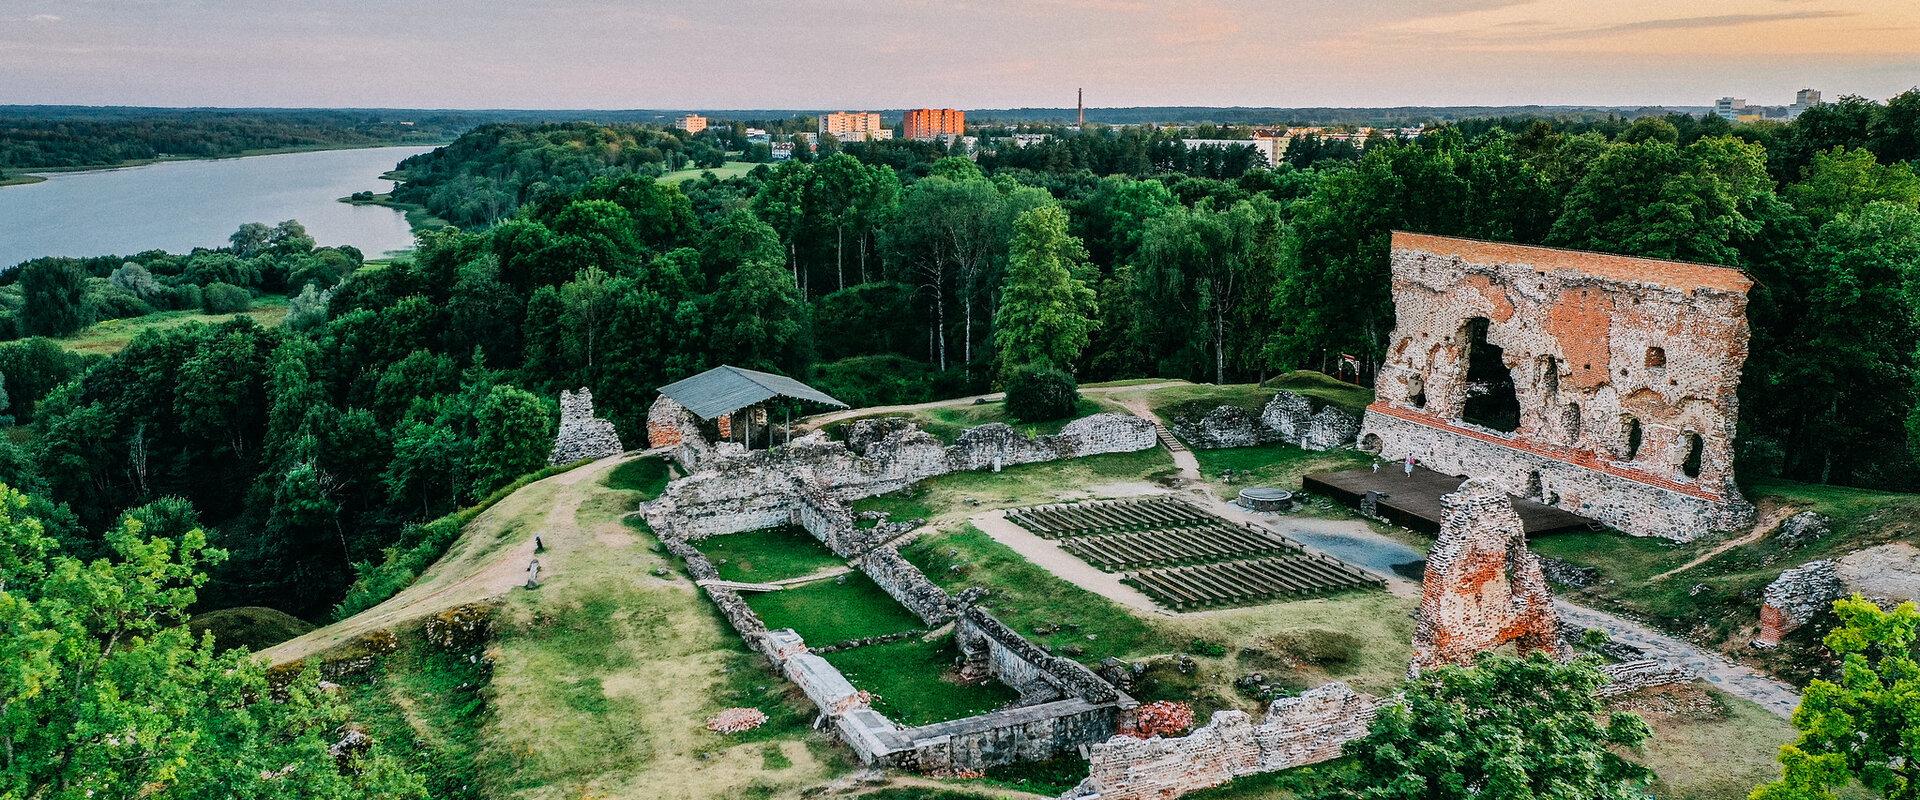 Entisen virolaisten linnan paikalle alkoi kohota kivilinna vuonna 1224. Lopullisen muotonsa ja kokonsa linna sai 1500-luvun alkuun mennessä. Se oli hu